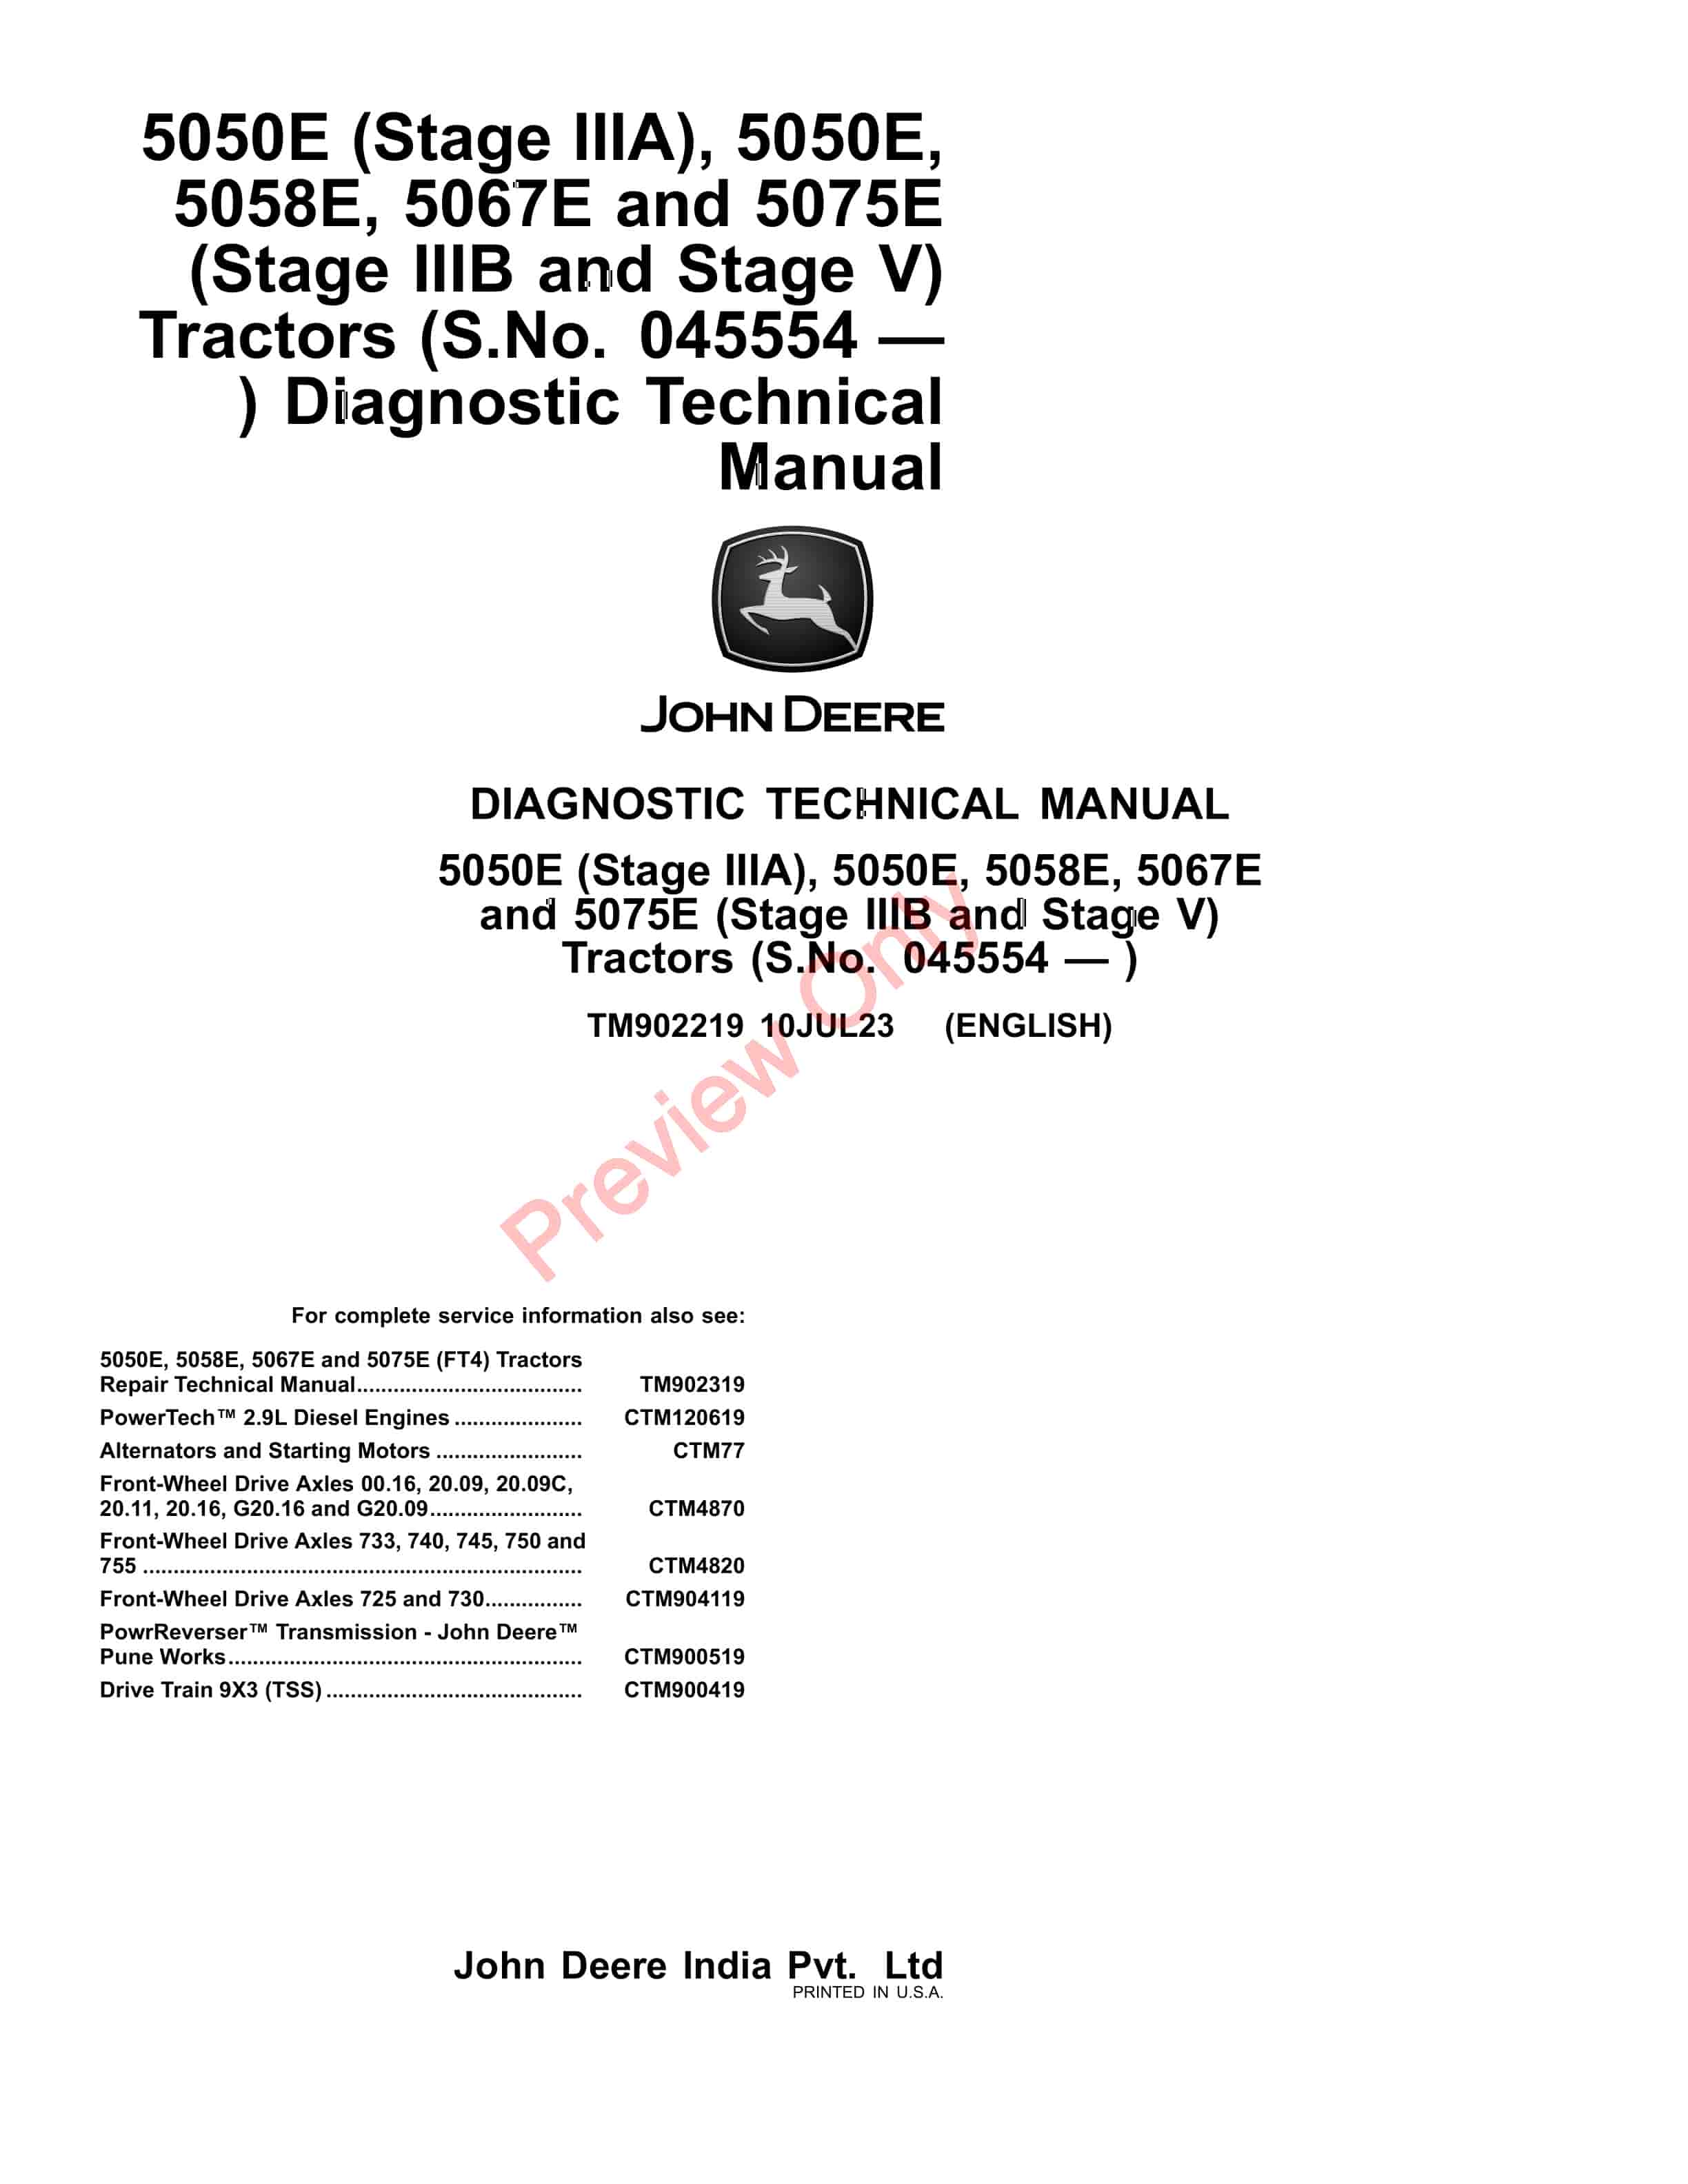 John Deere 5050E (Stage IIIA), 5050E, 5058E, 5067E and 5075E (Stage IIIB and Stage V) Tractors (045554 Diagnostic Technical Manual TM902219 10JUL23-1